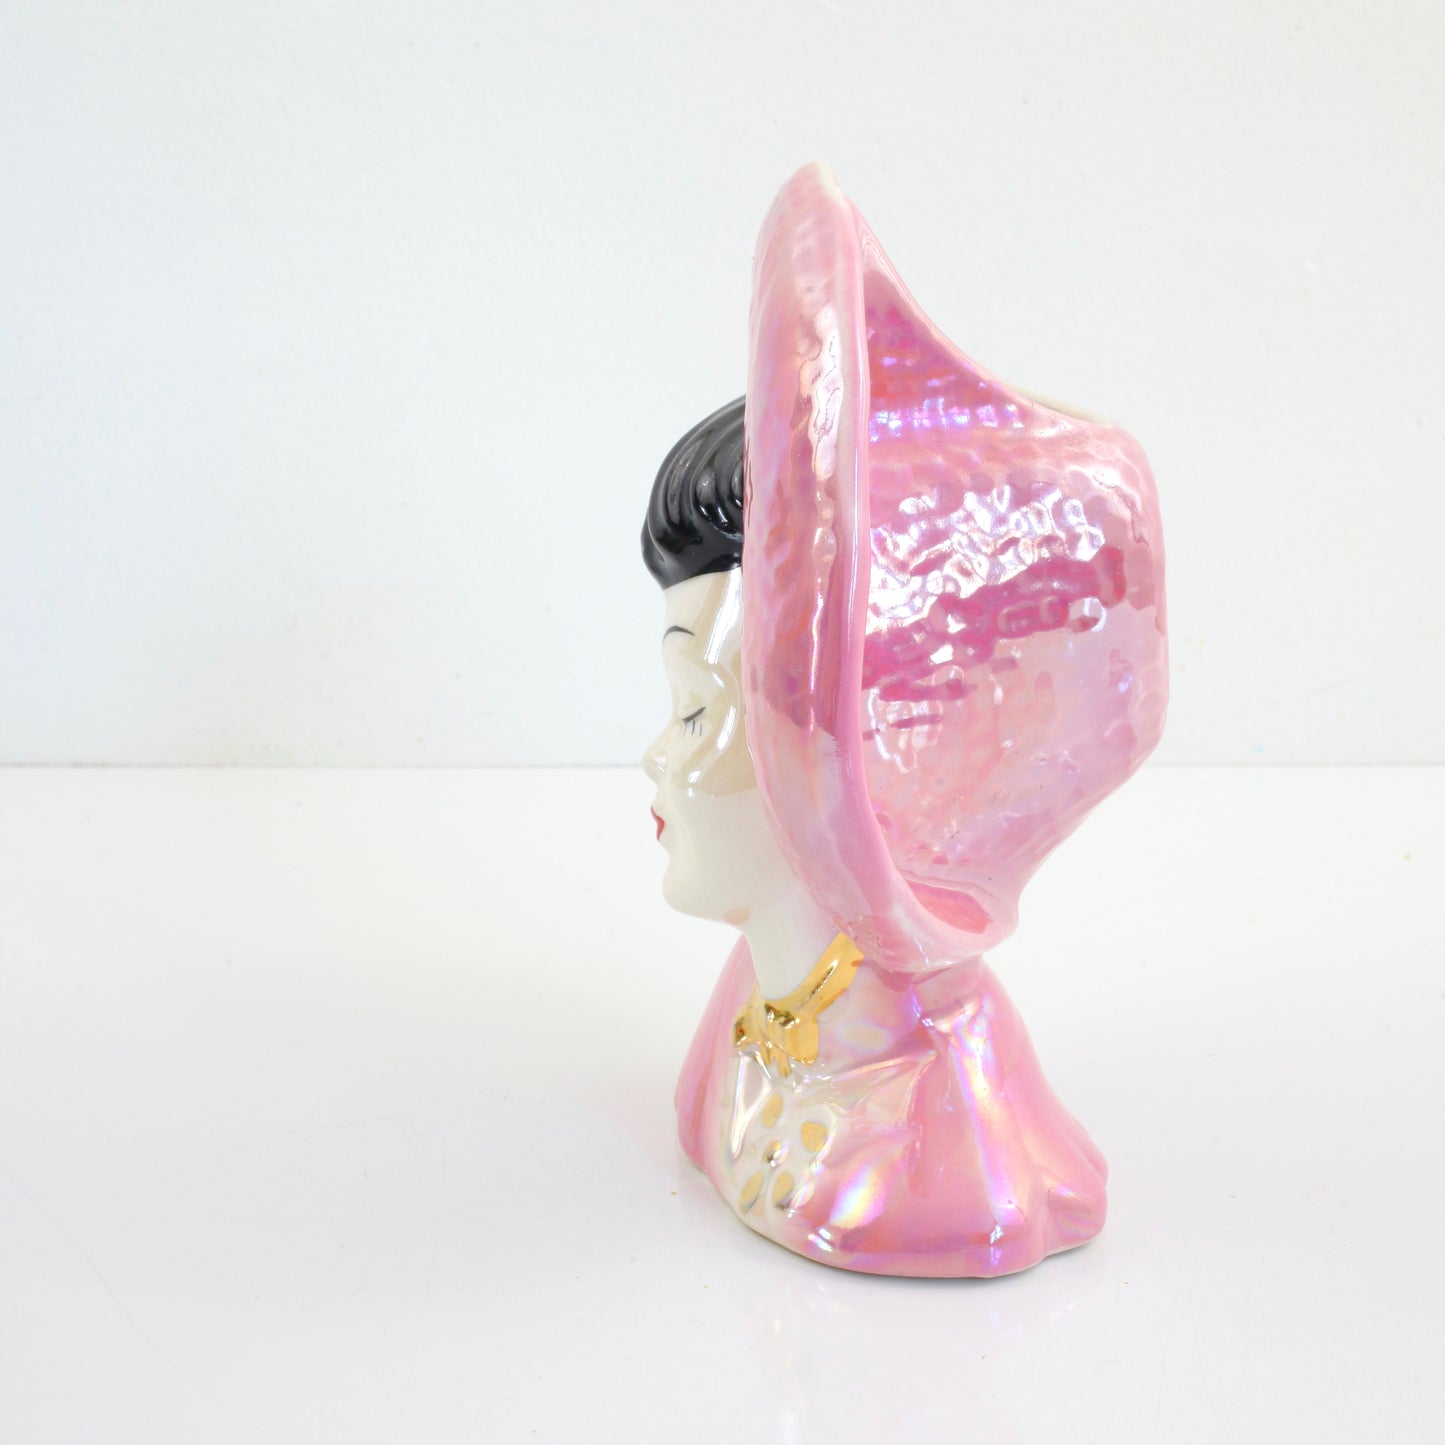 SOLD - Vintage 1950s Pink Lusterware Head Vase